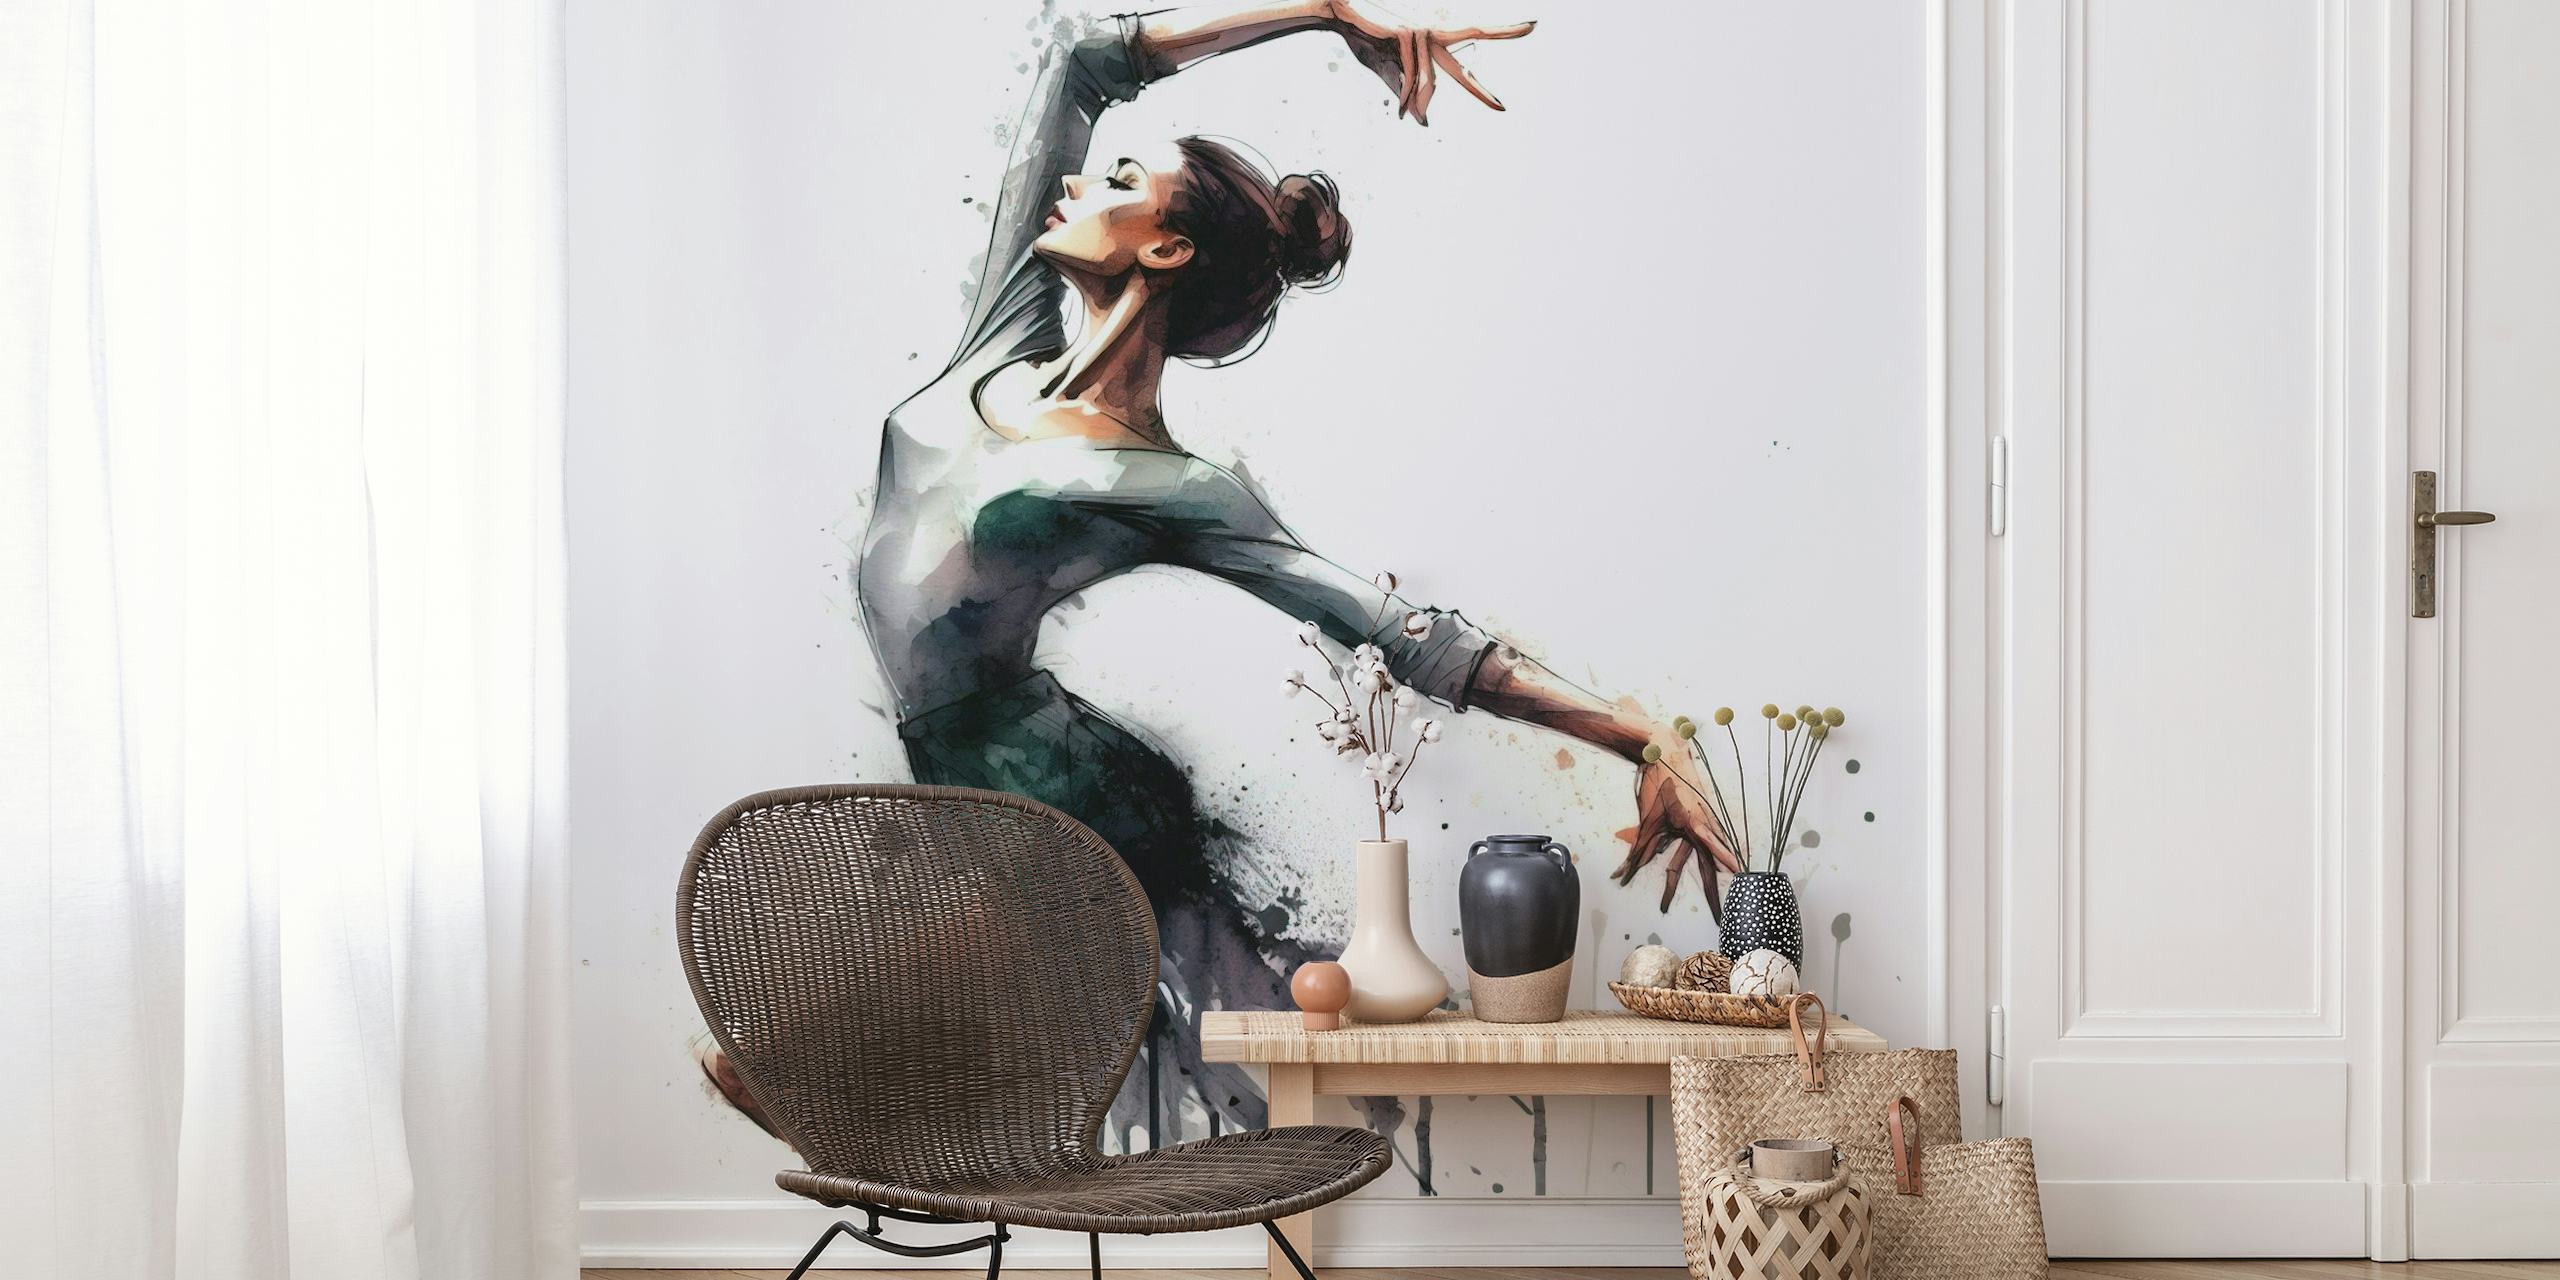 Mural artístico em aquarela de uma bailarina em movimento